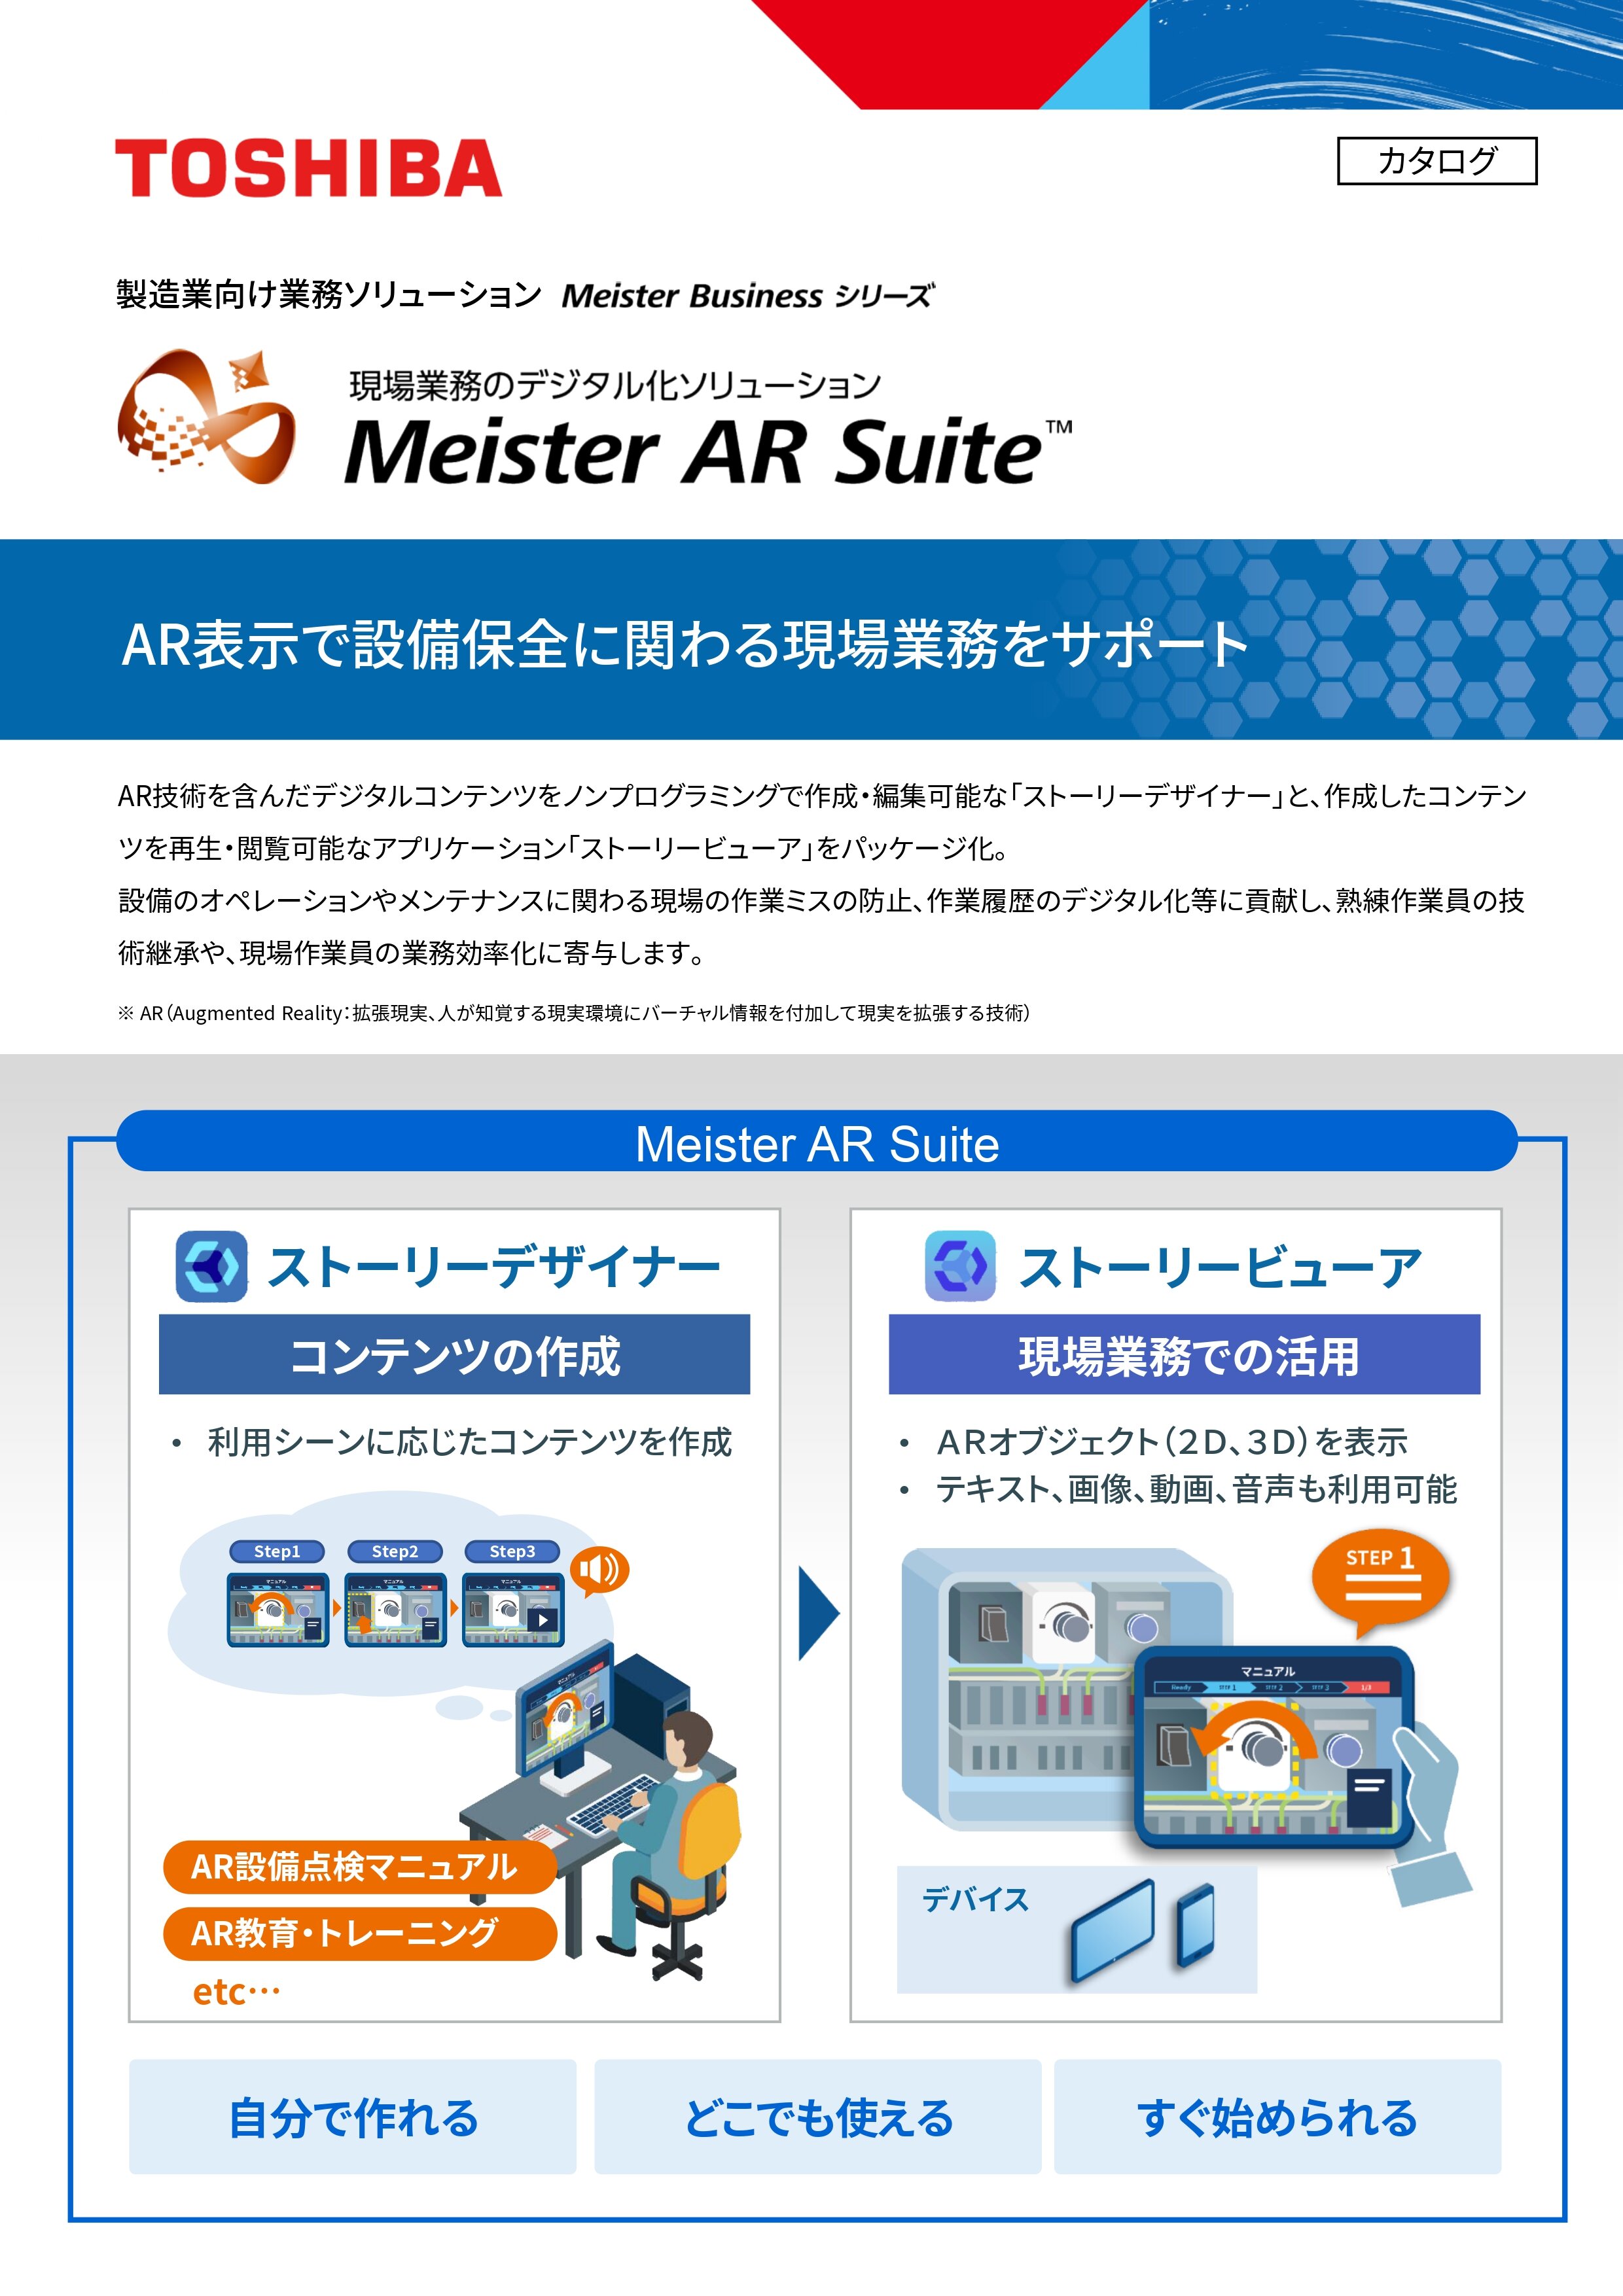 Meister AR Suite V2.2_01.jpg